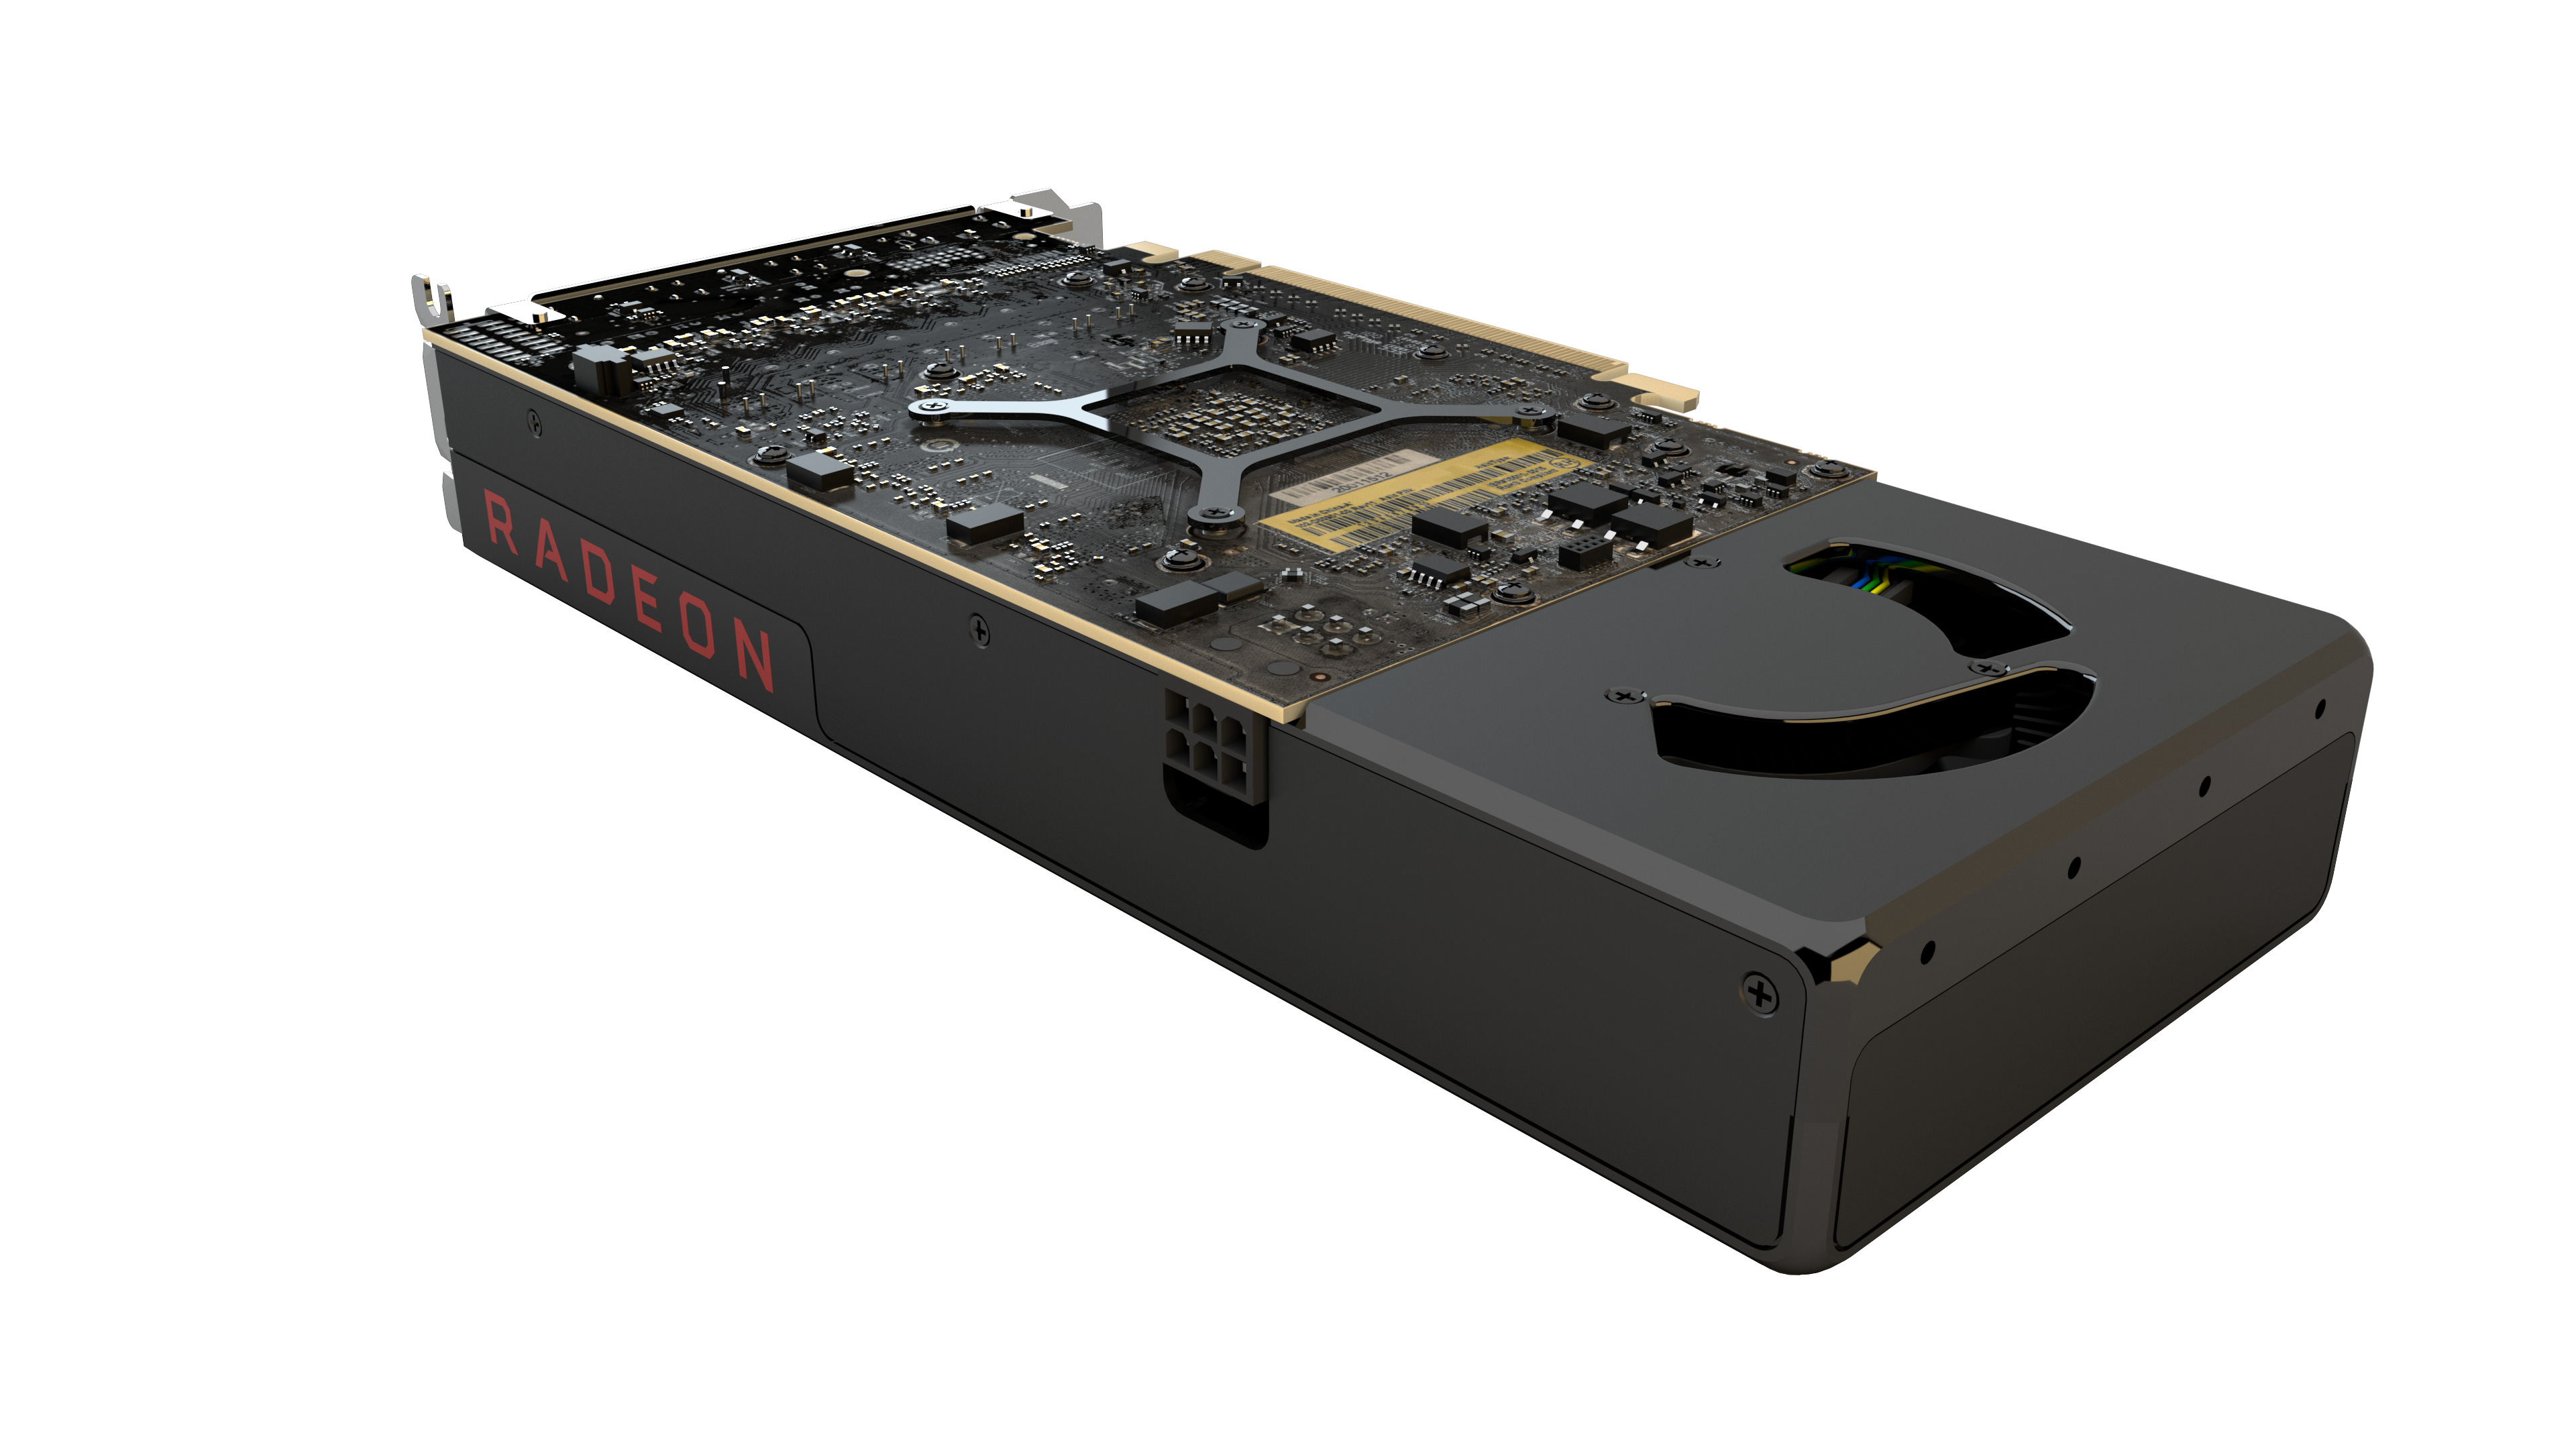 Immagine pubblicata in relazione al seguente contenuto: AMD annuncia la disponibilit commerciale della Radeon RX 480 8GB | Nome immagine: news24512_AMD-Radeon-RX-480_2.jpg